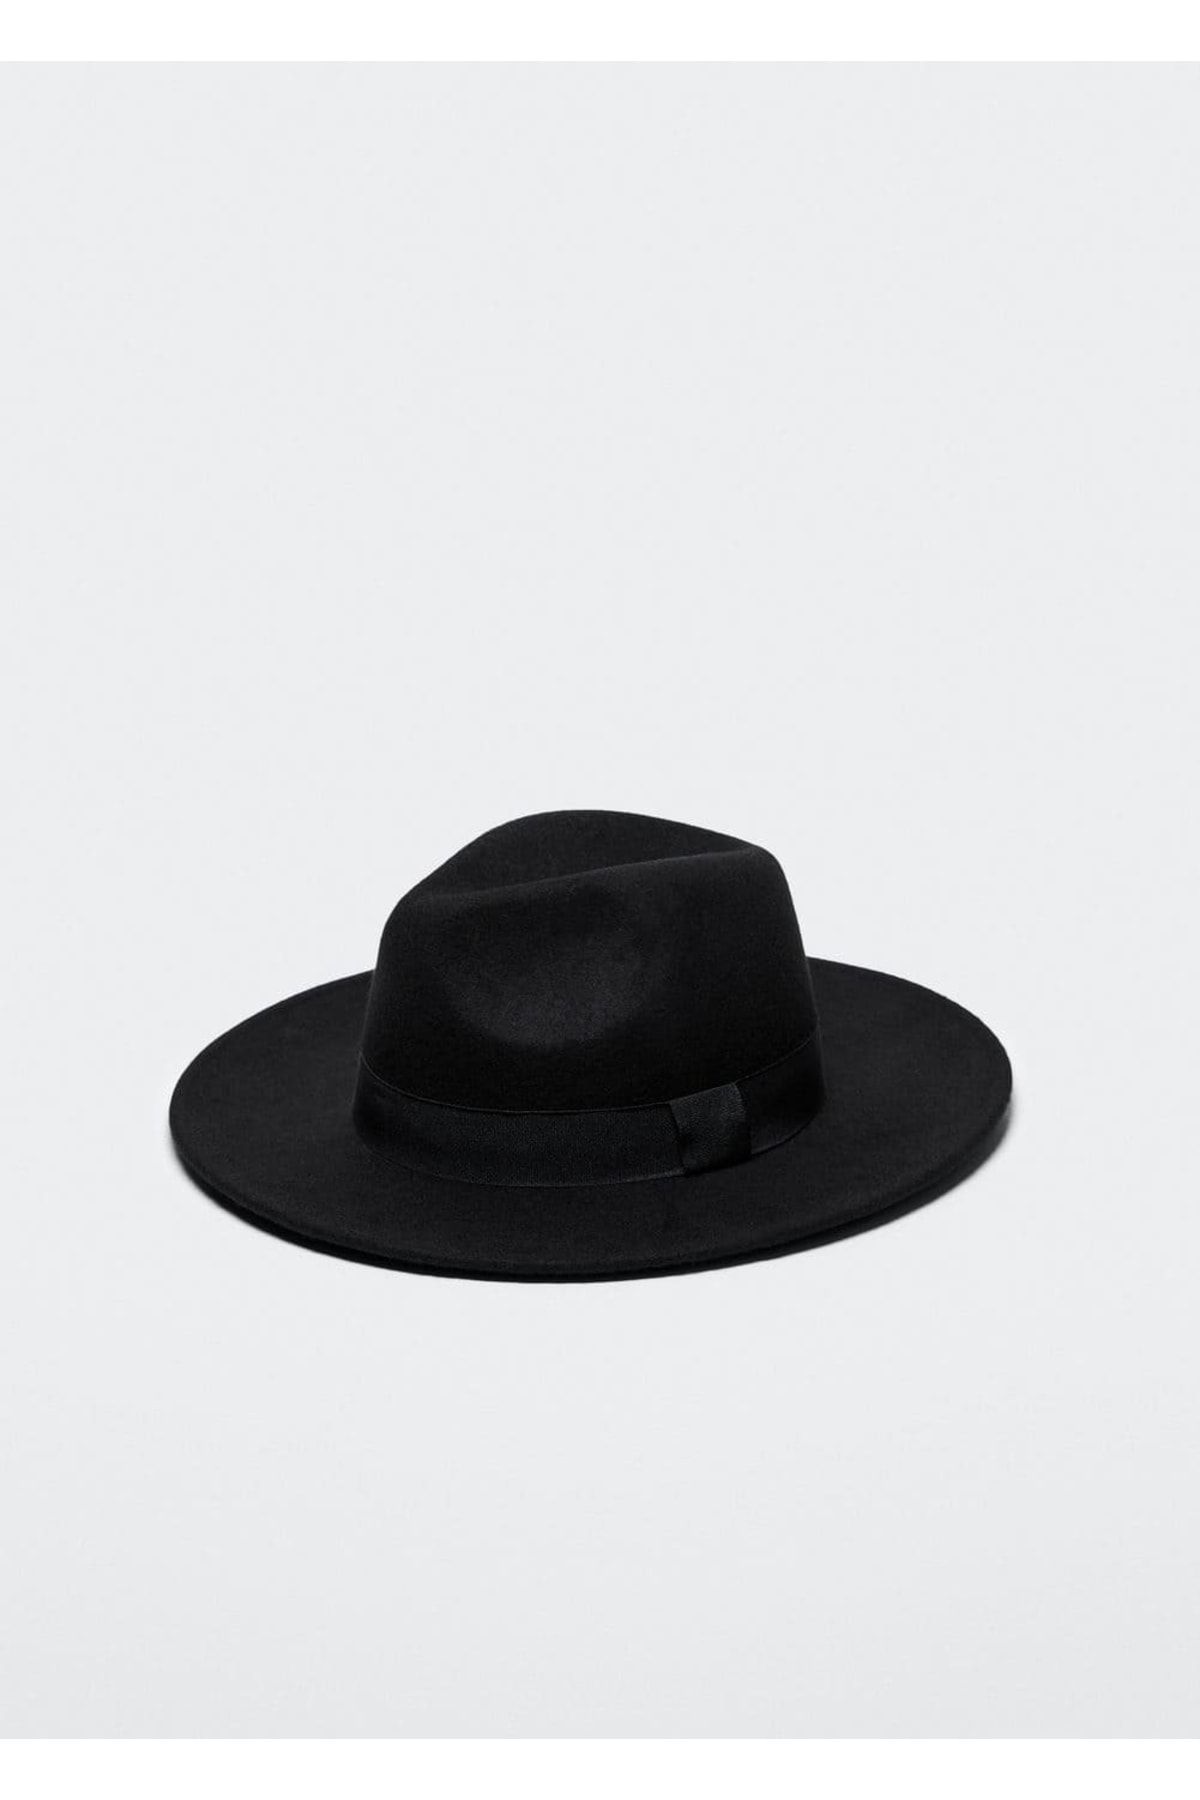 MANGO %100 Yün Şapka